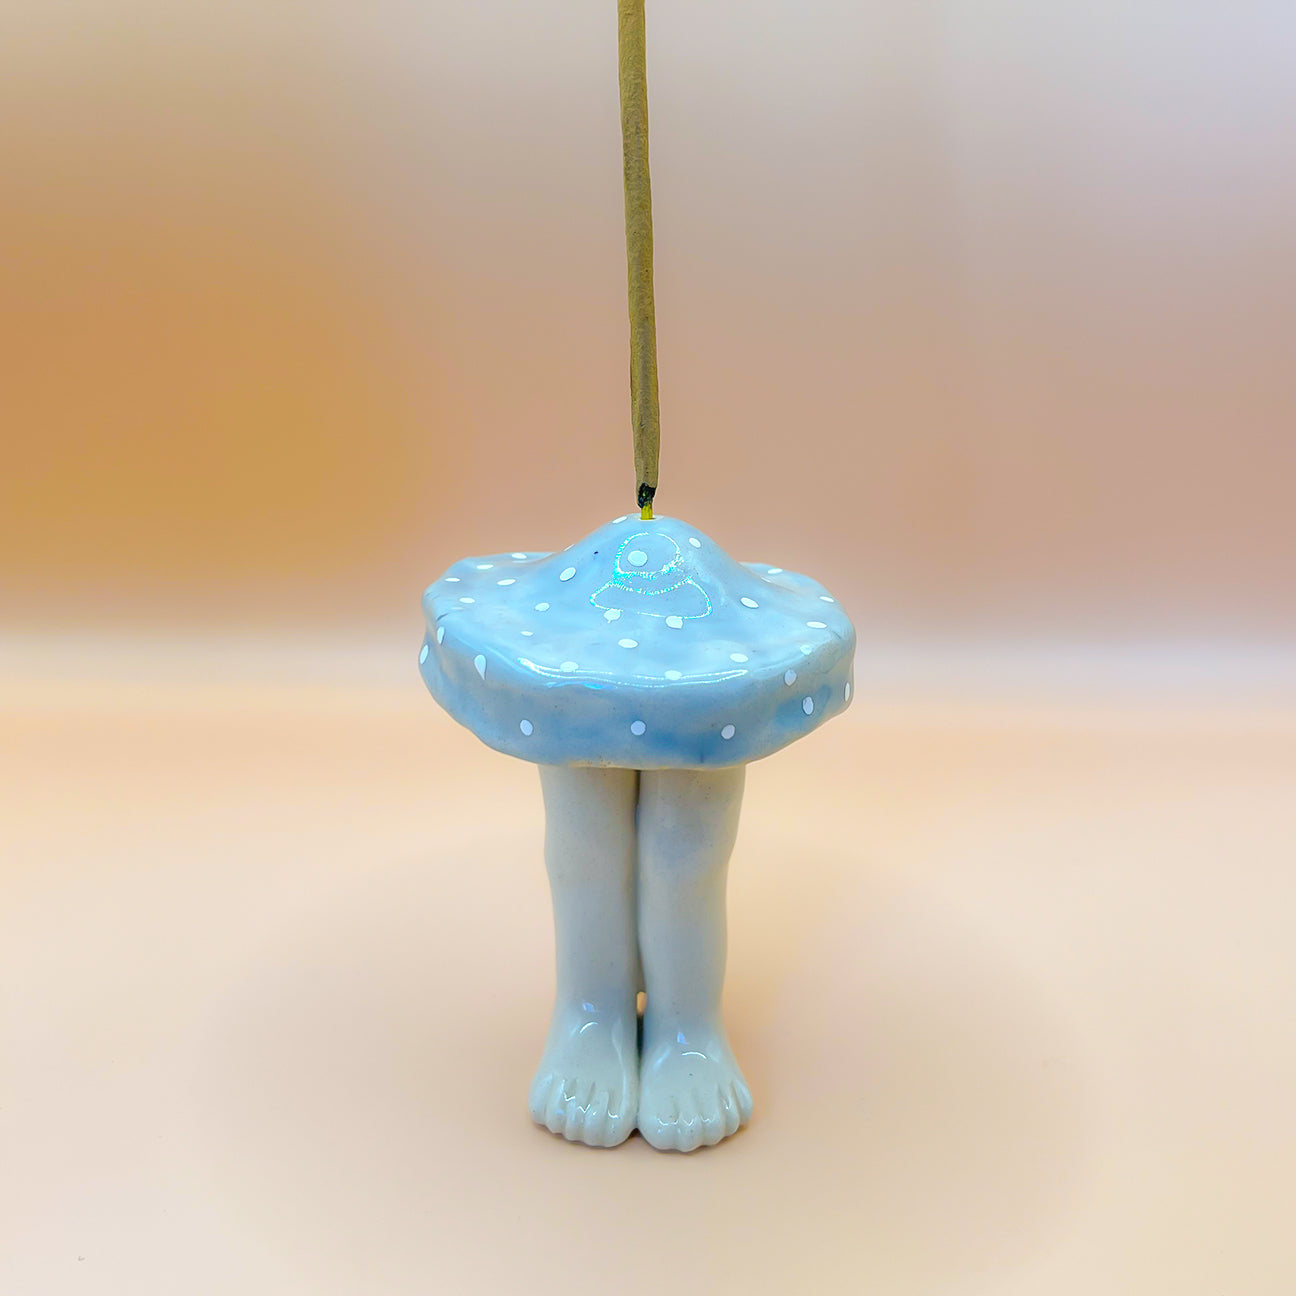 Blue mushroom inciensero